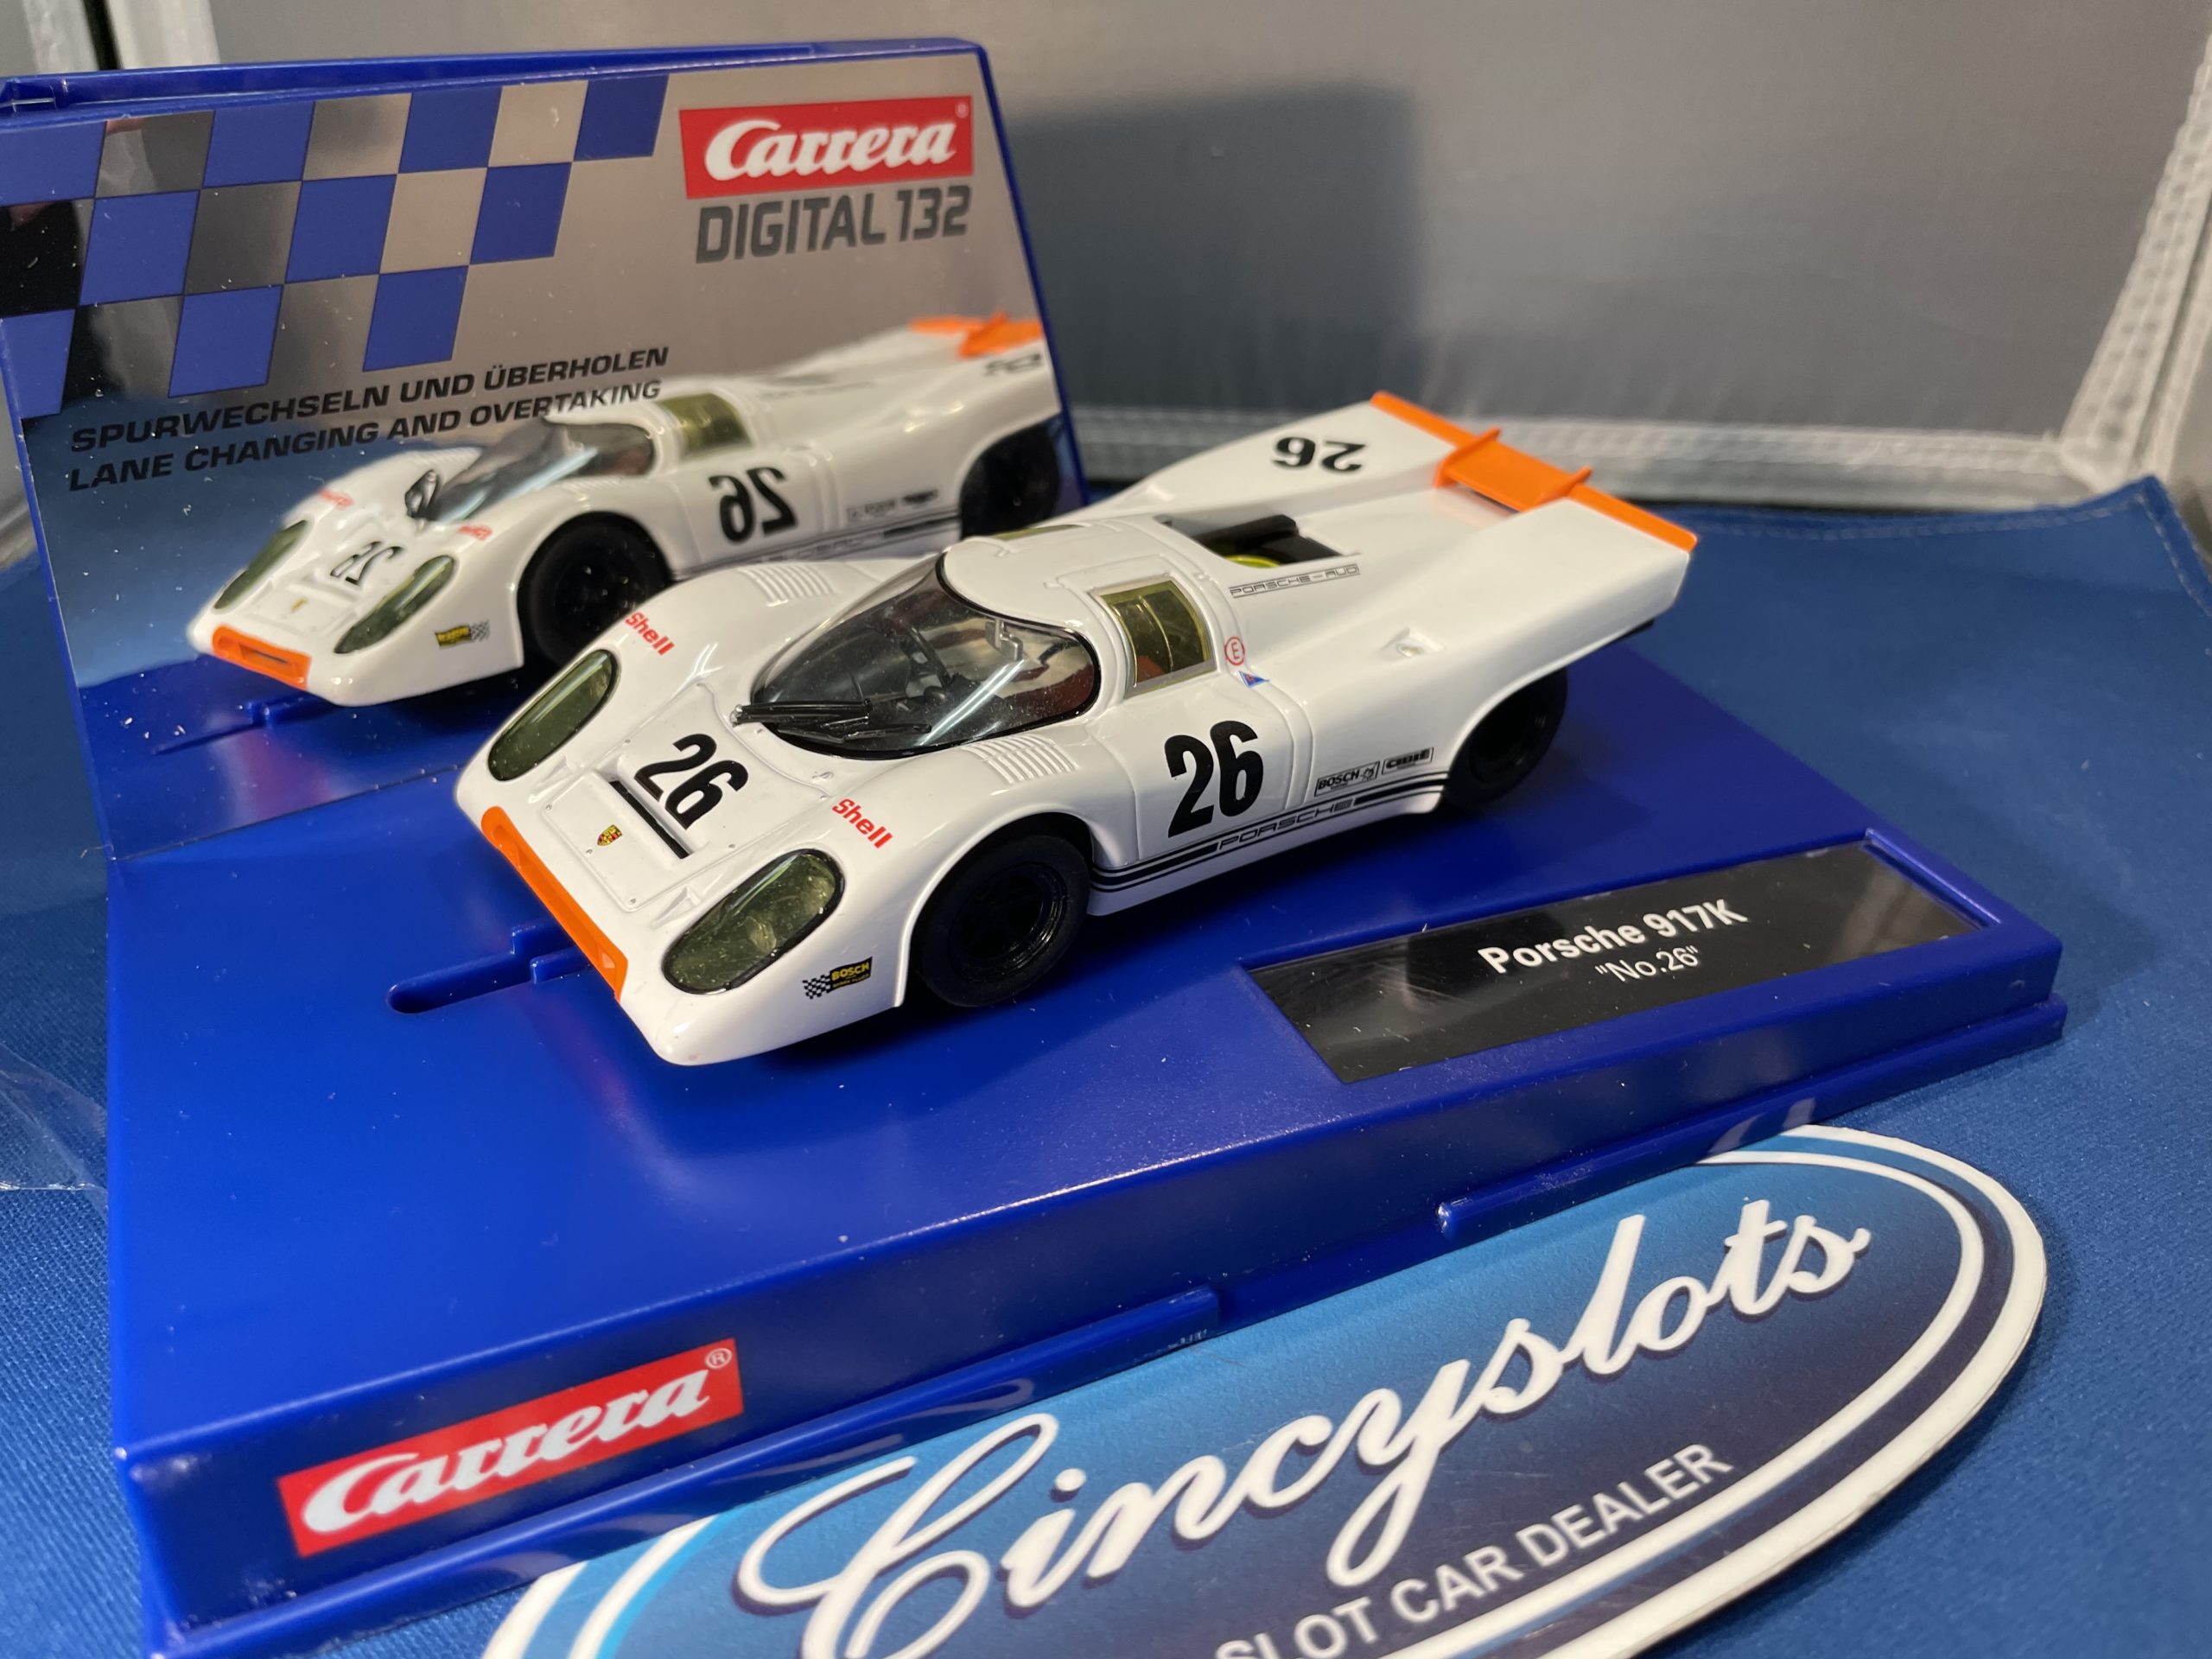 1:32 scale slot car Carrera Digital 132 30888 Porsche 917K No.26 